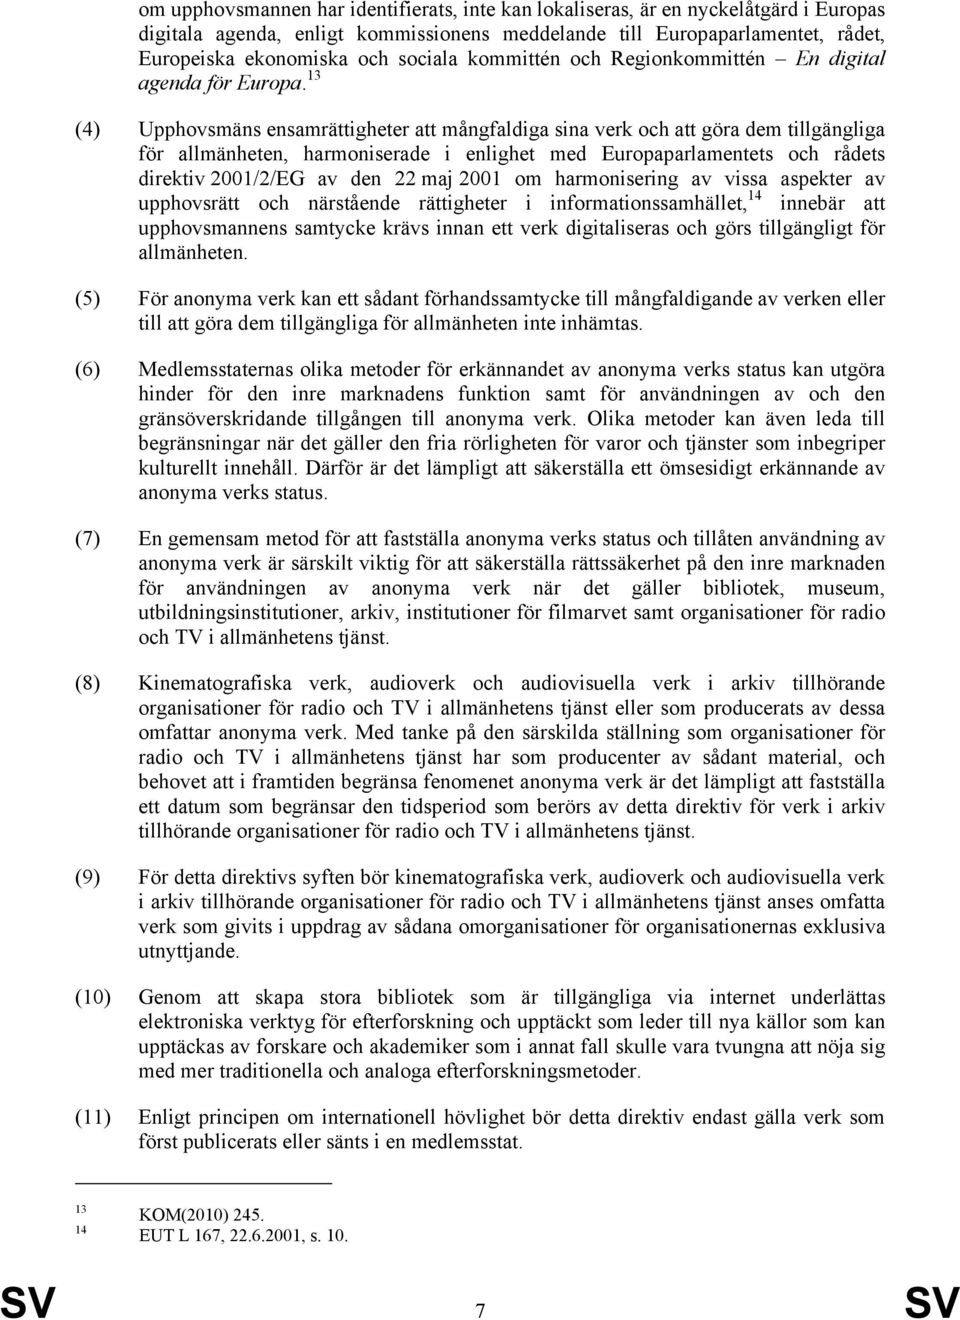 13 (4) Upphovsmäns ensamrättigheter att mångfaldiga sina verk och att göra dem tillgängliga för allmänheten, harmoniserade i enlighet med Europaparlamentets och rådets direktiv 2001/2/EG av den 22